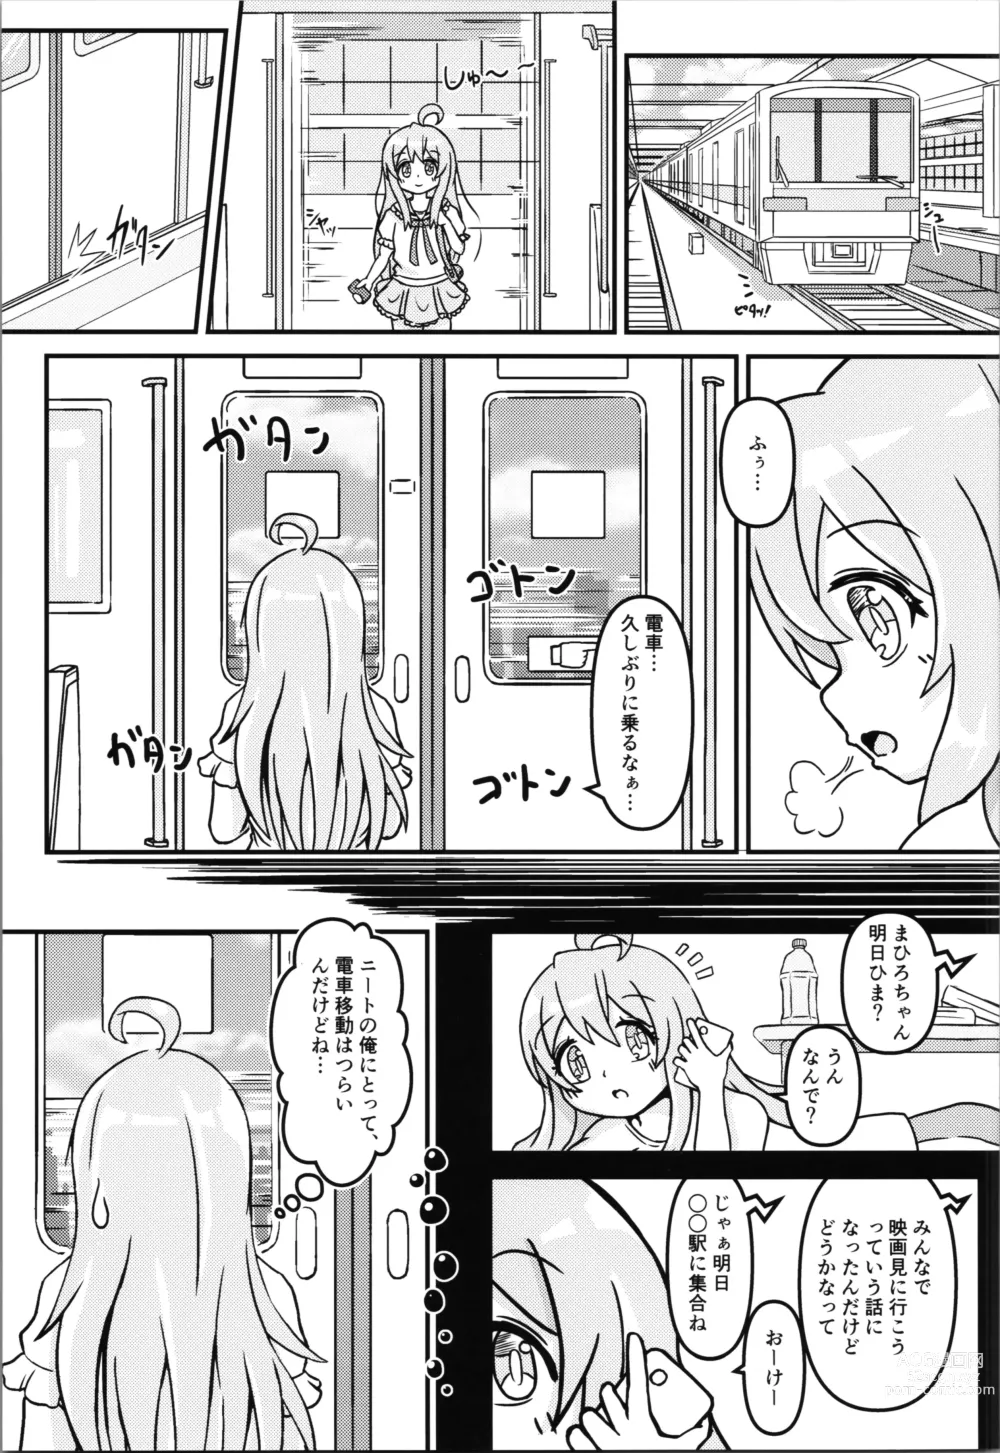 Page 5 of doujinshi Mahiro-chans bouncy ××× experience